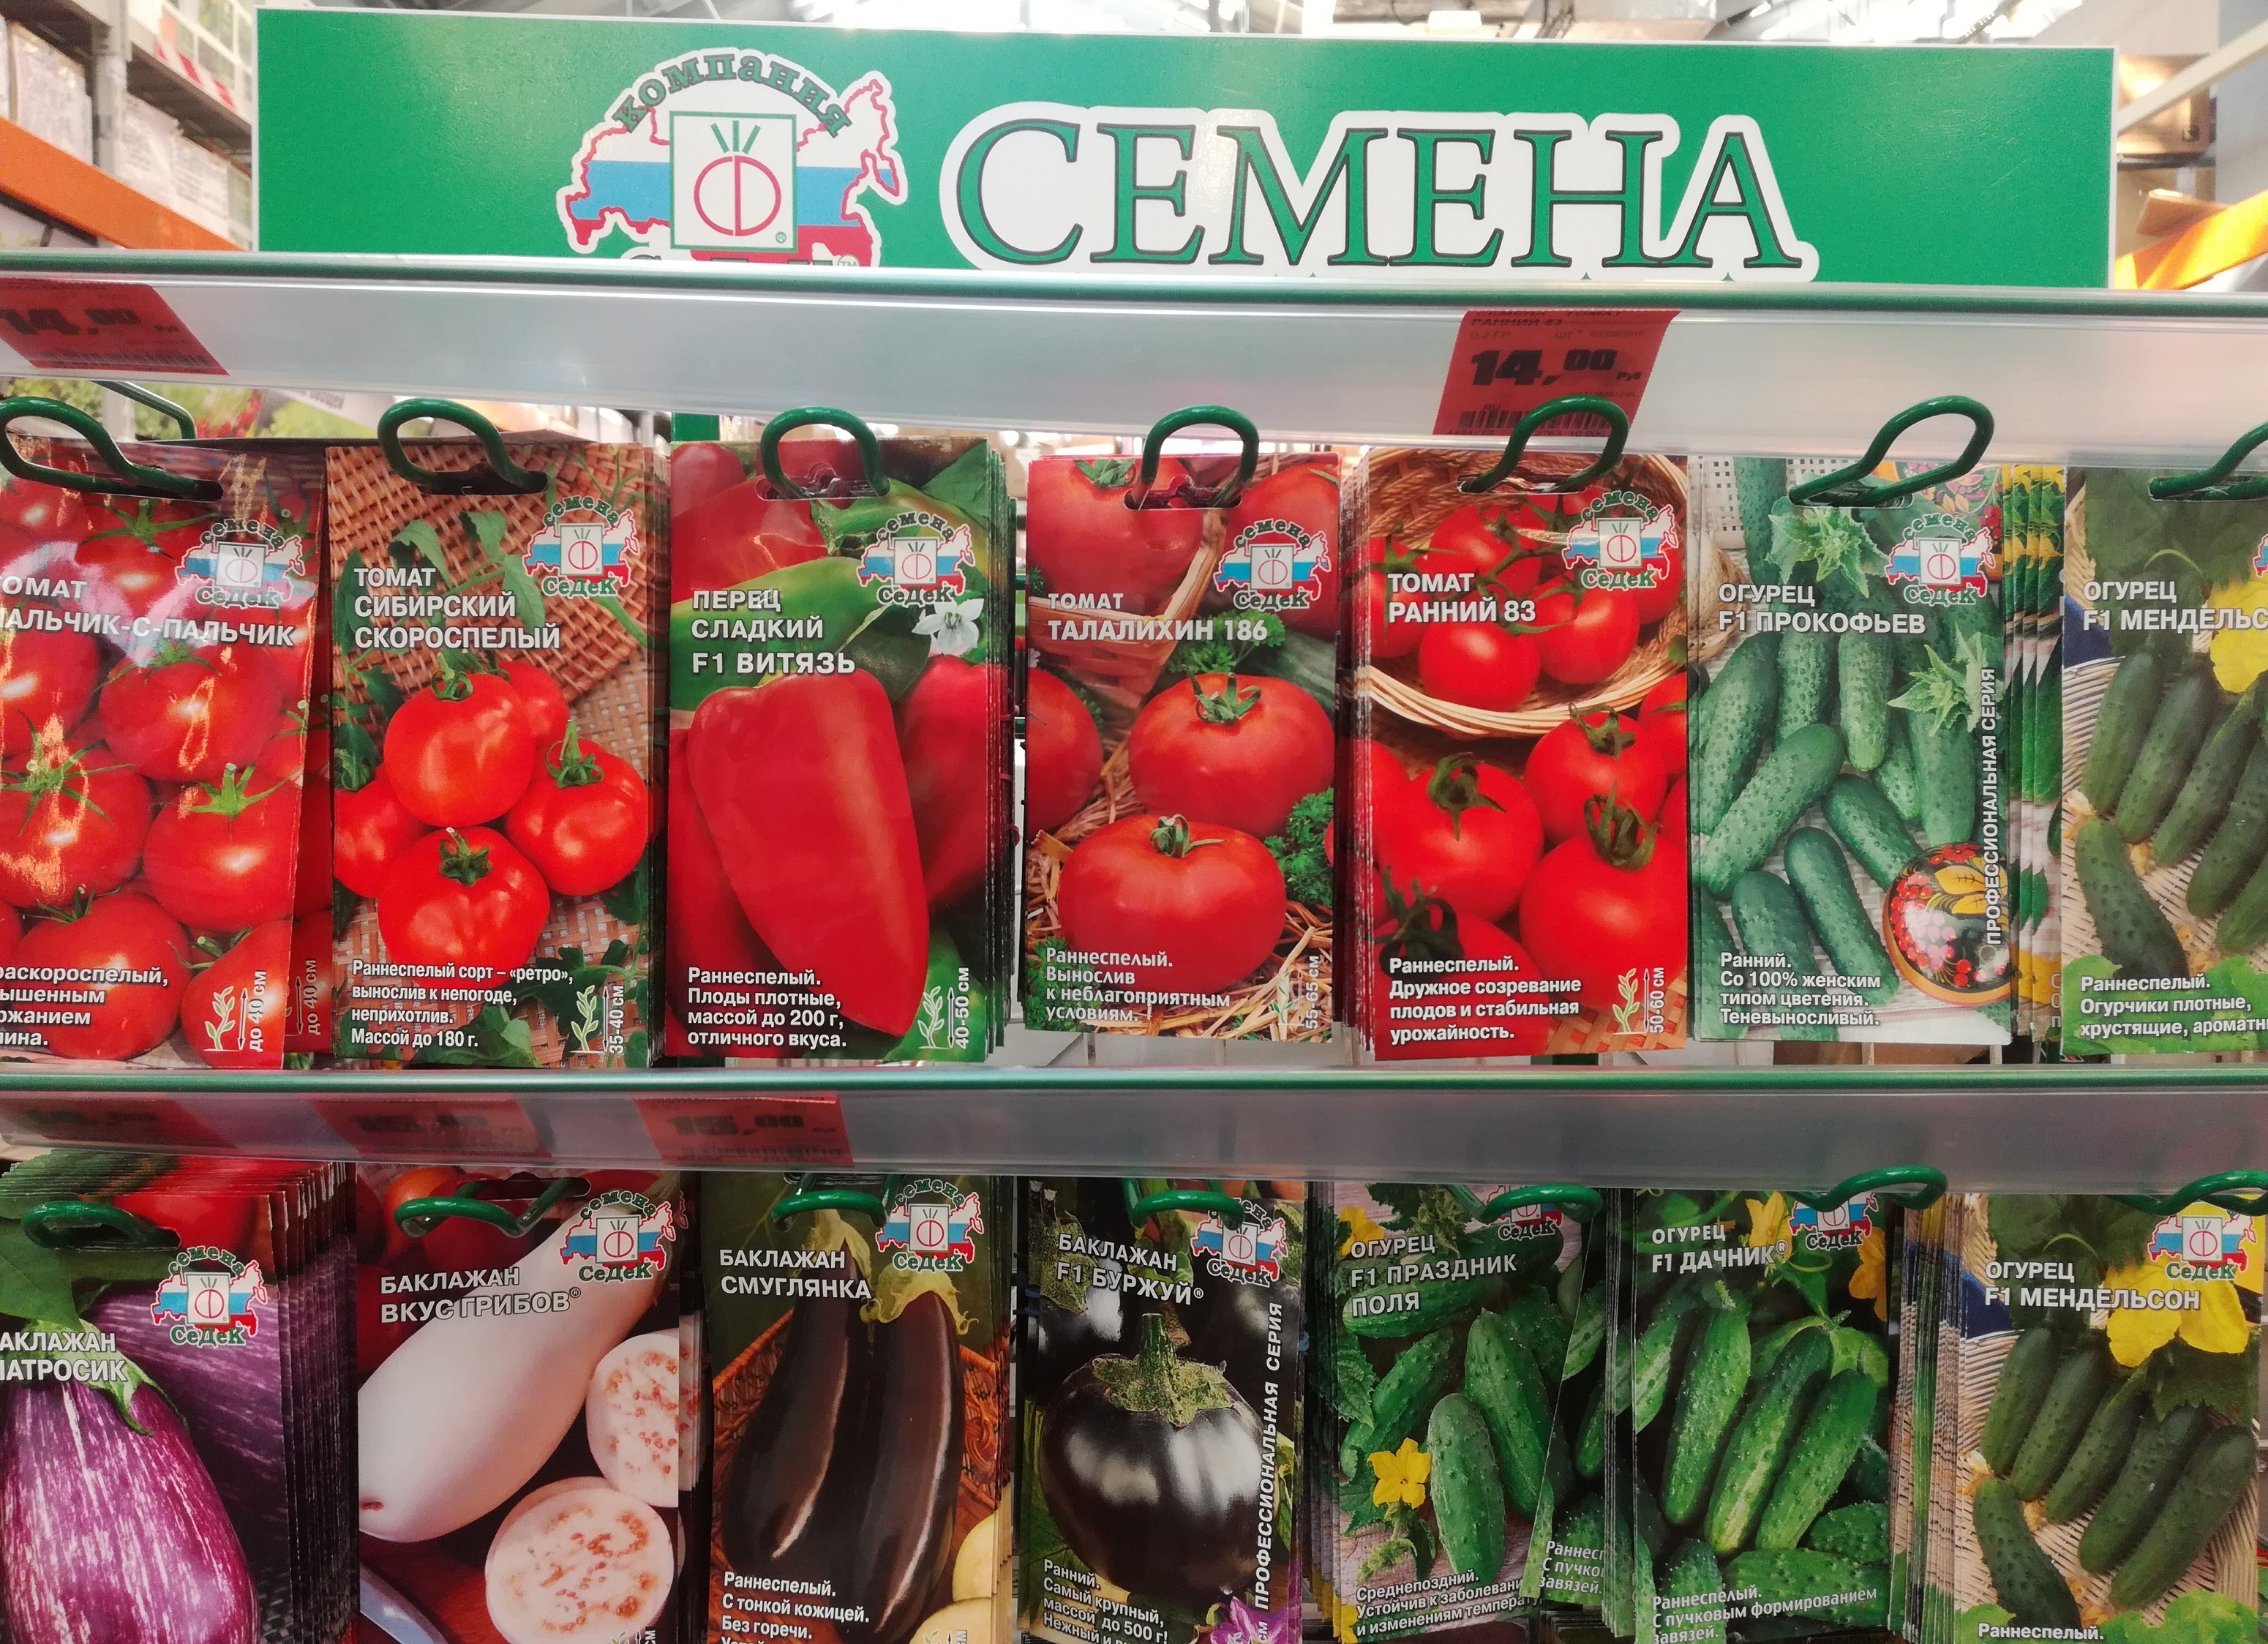 Где купить семена в сочи ношение конопли в украине